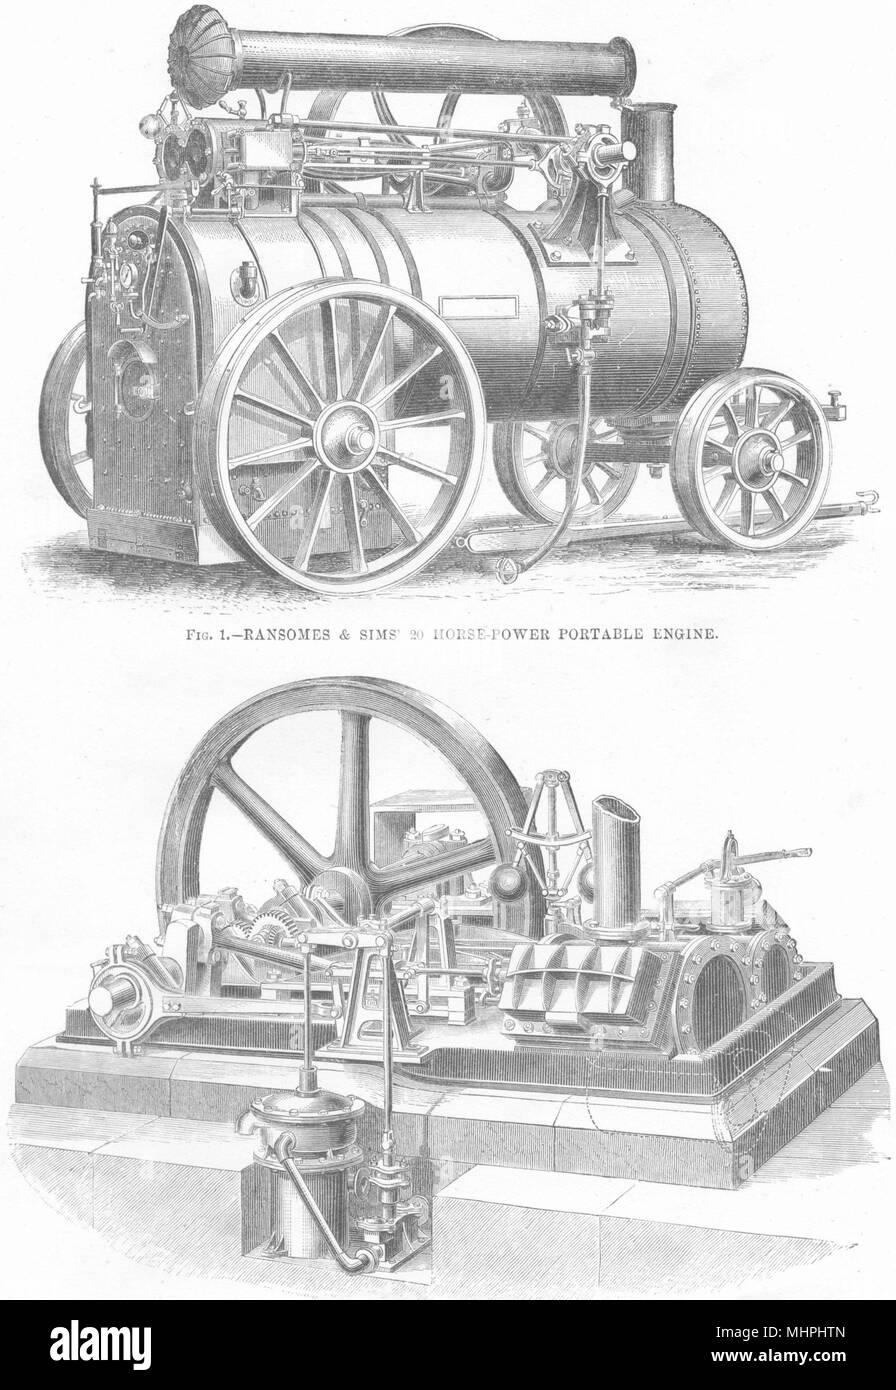 Il vapore- motore. Ransomes Sims 20 HP portatile; 2 maggio- bombola orizzontale 1880 Foto Stock